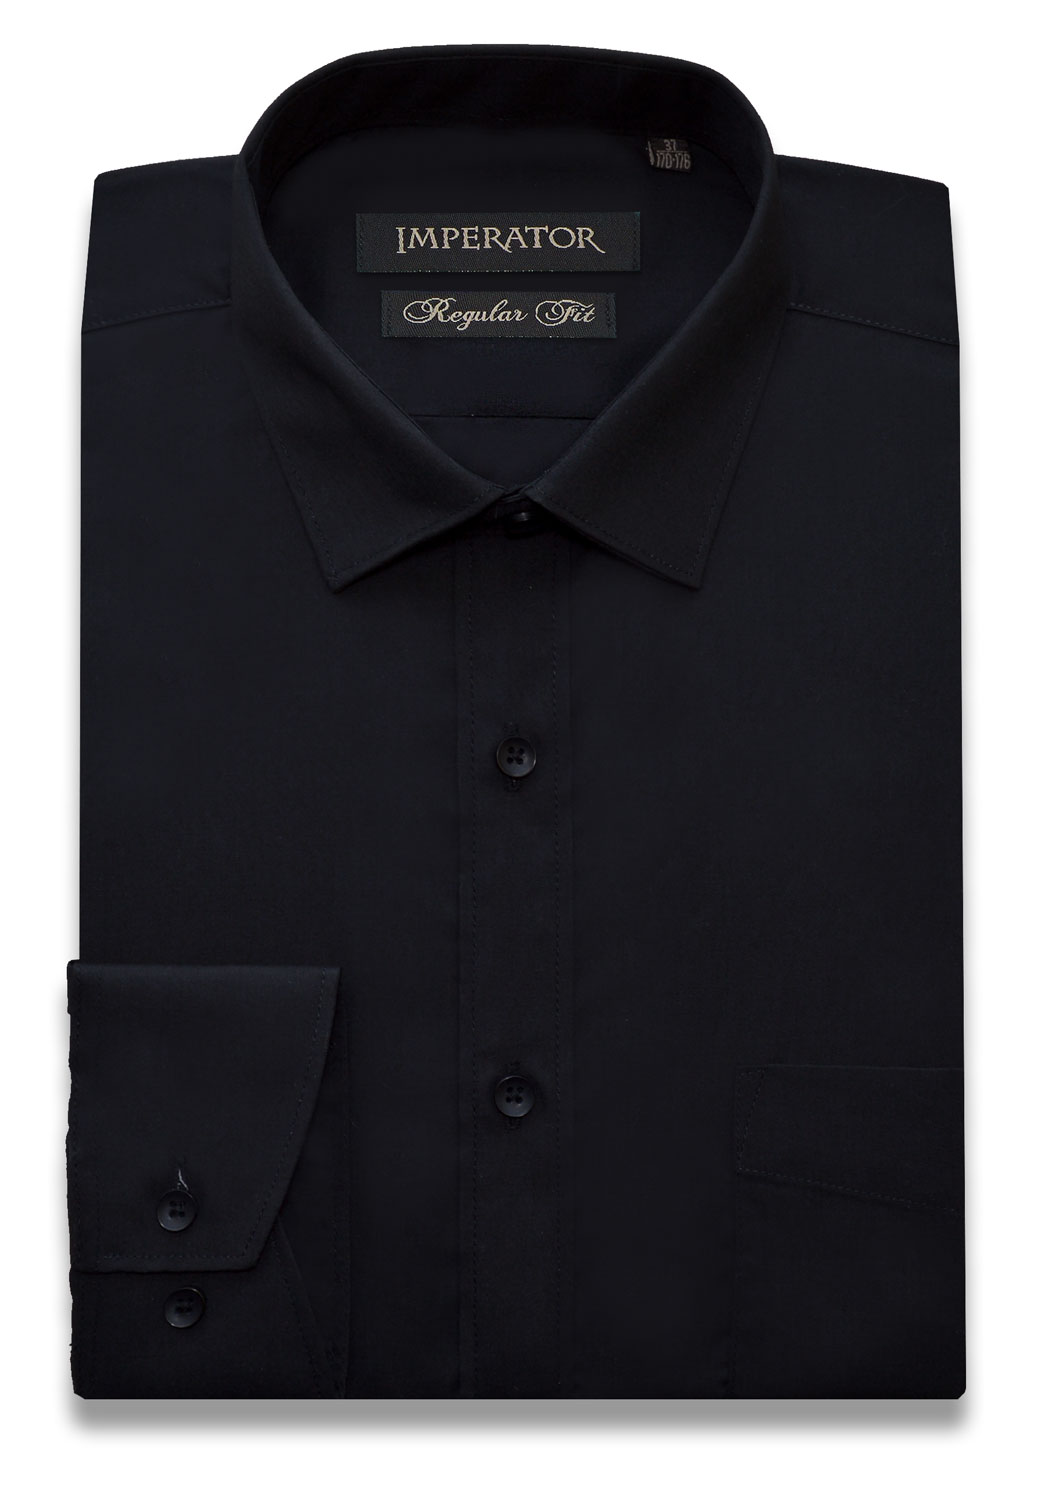 Рубашка мужская Imperator DF420 черная 41/178-186